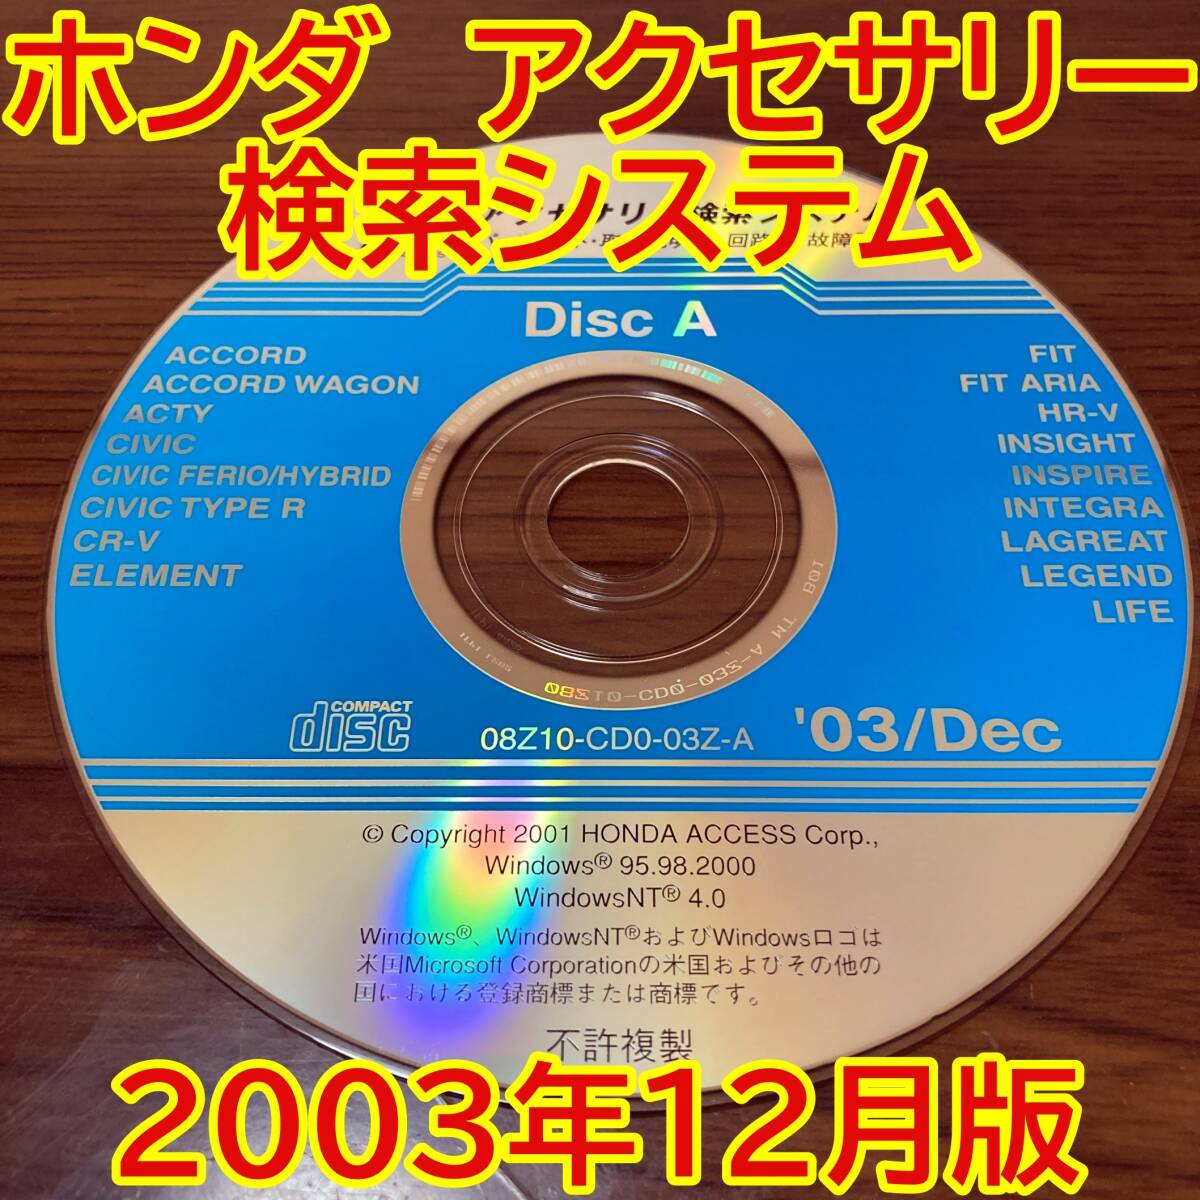 2003年12月版 ホンダ純正 アクセサリー検索システム Disc A 取付説明書 配線図 [H178]